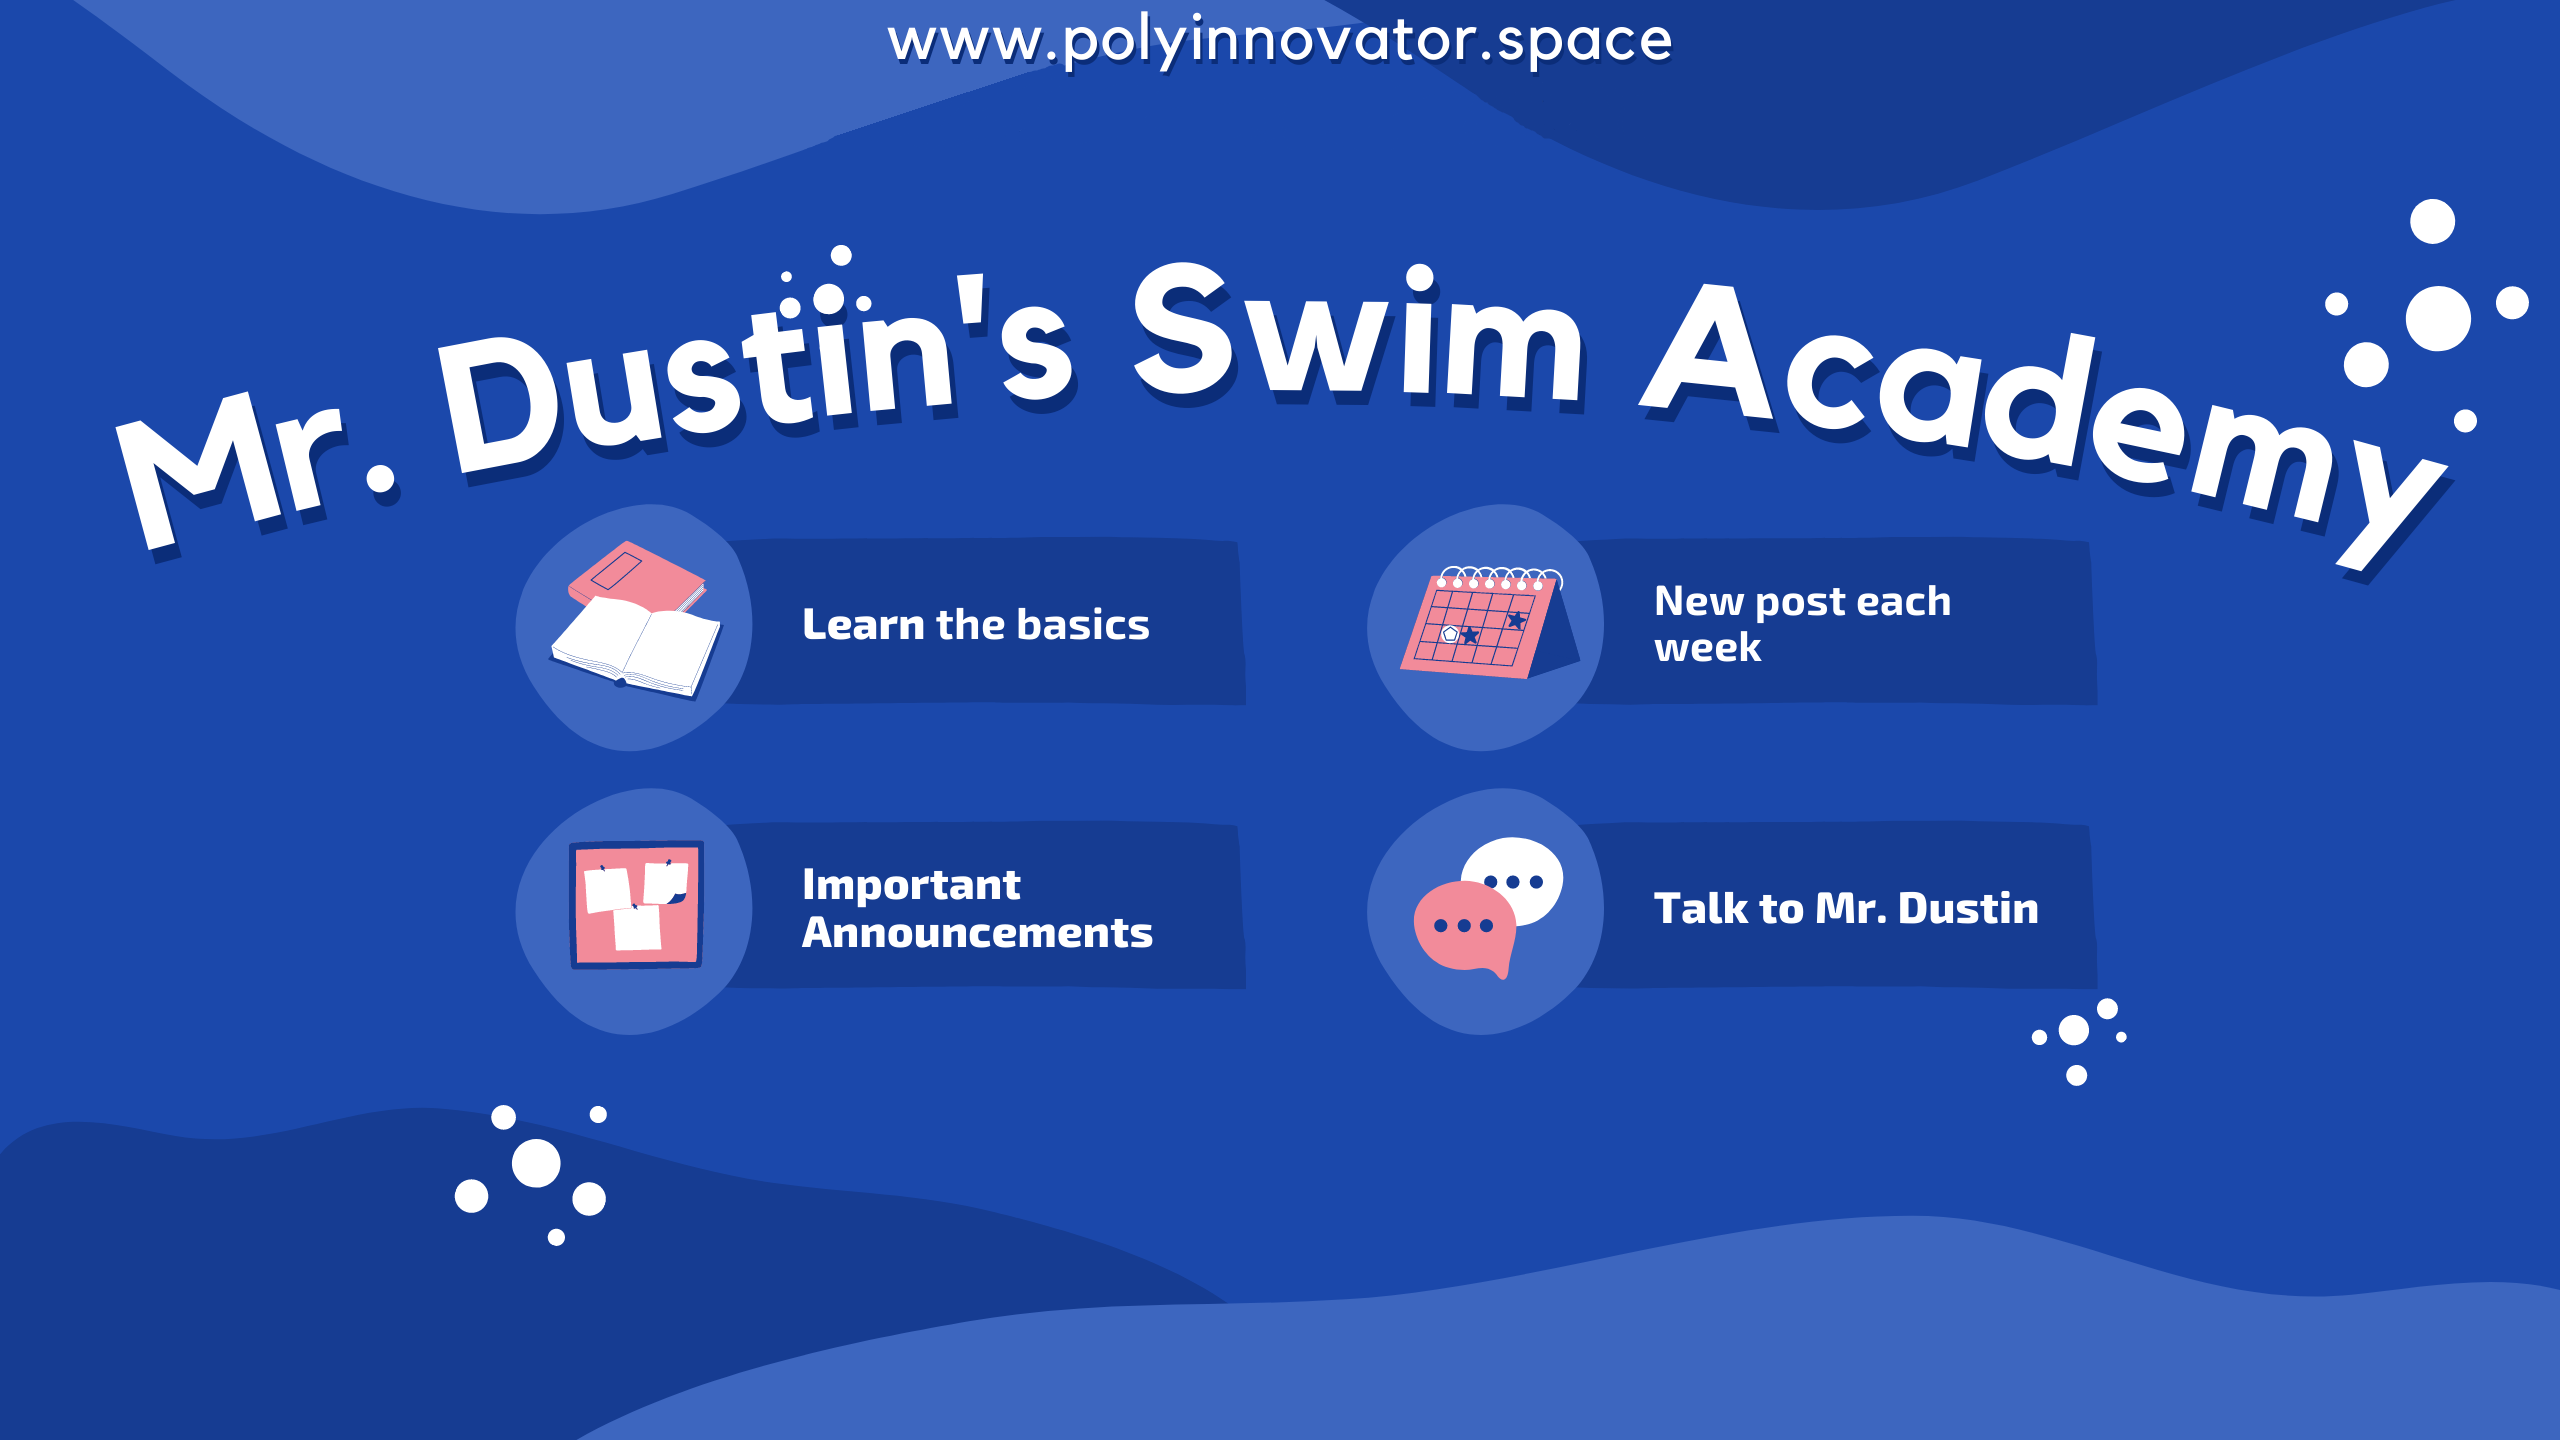 Why Mr. Dustin's Swim Academy?